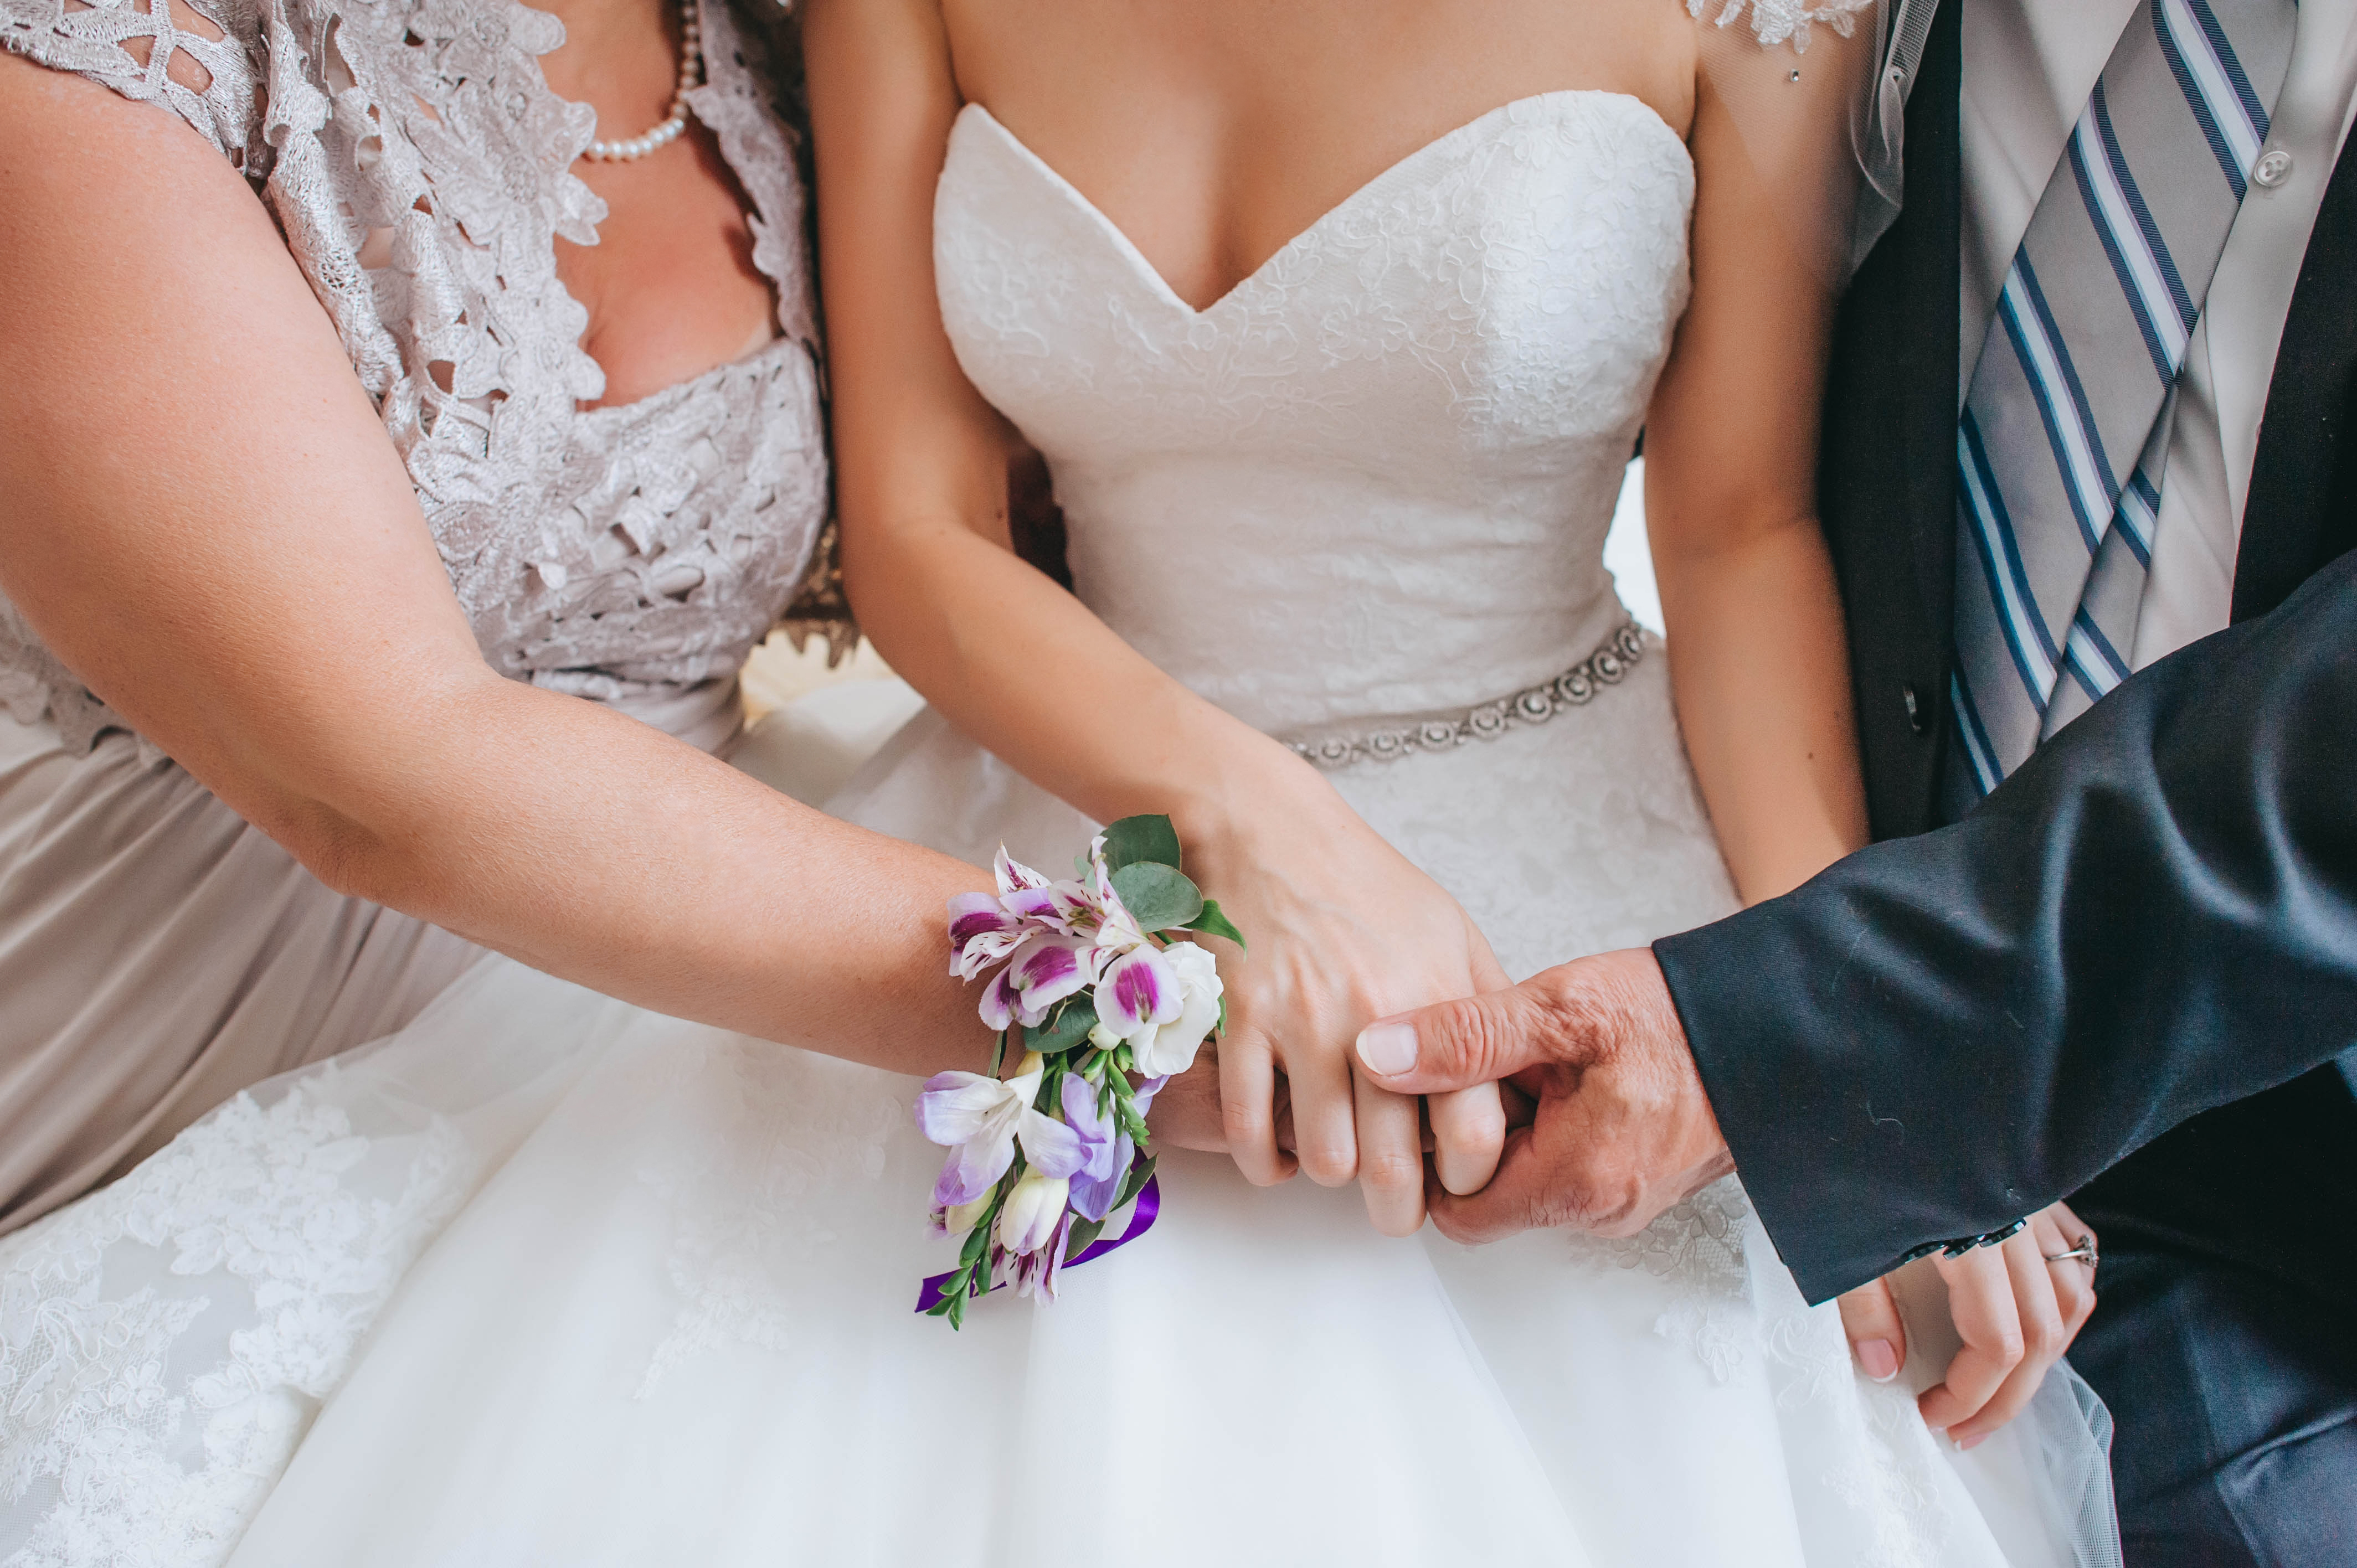 Parents tenant la main de leur fille le jour de son mariage | Source : Shutterstock